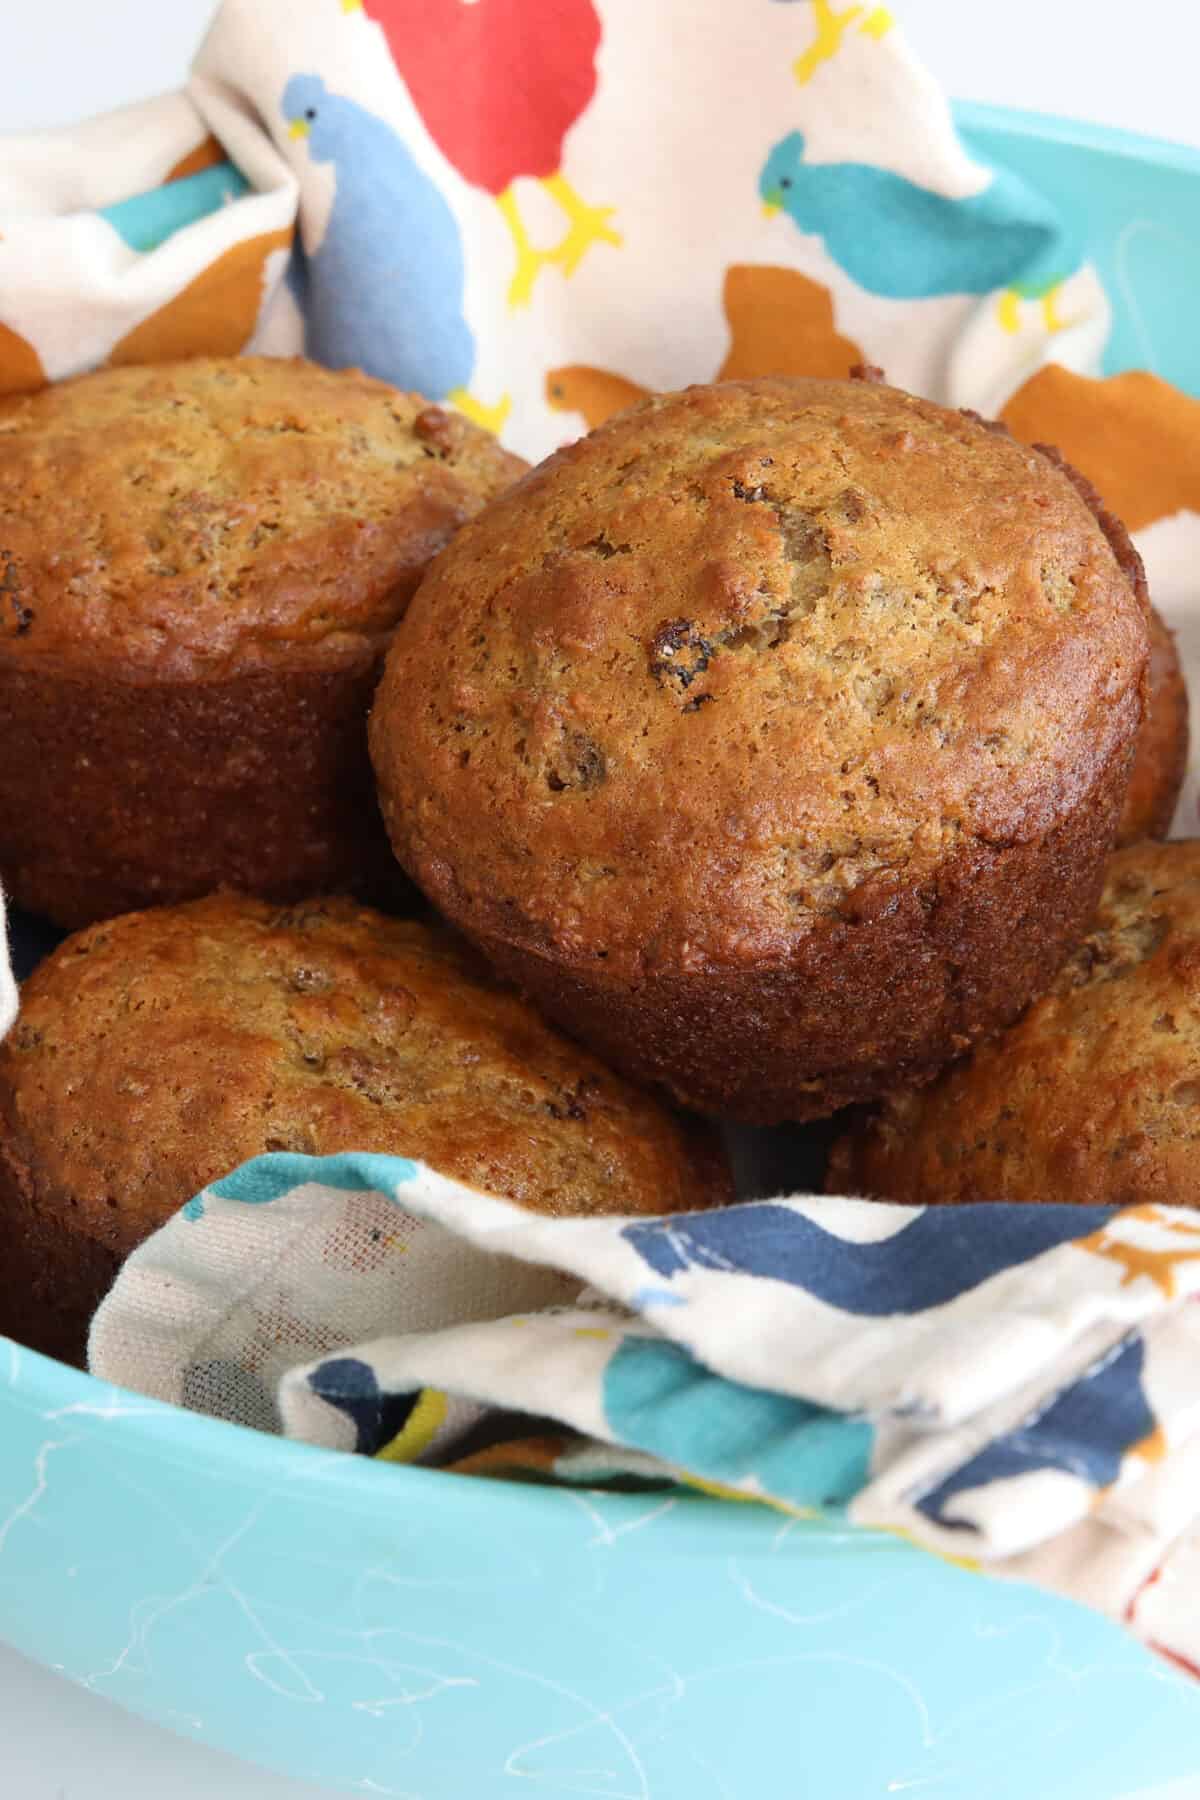 bran muffins in a basket